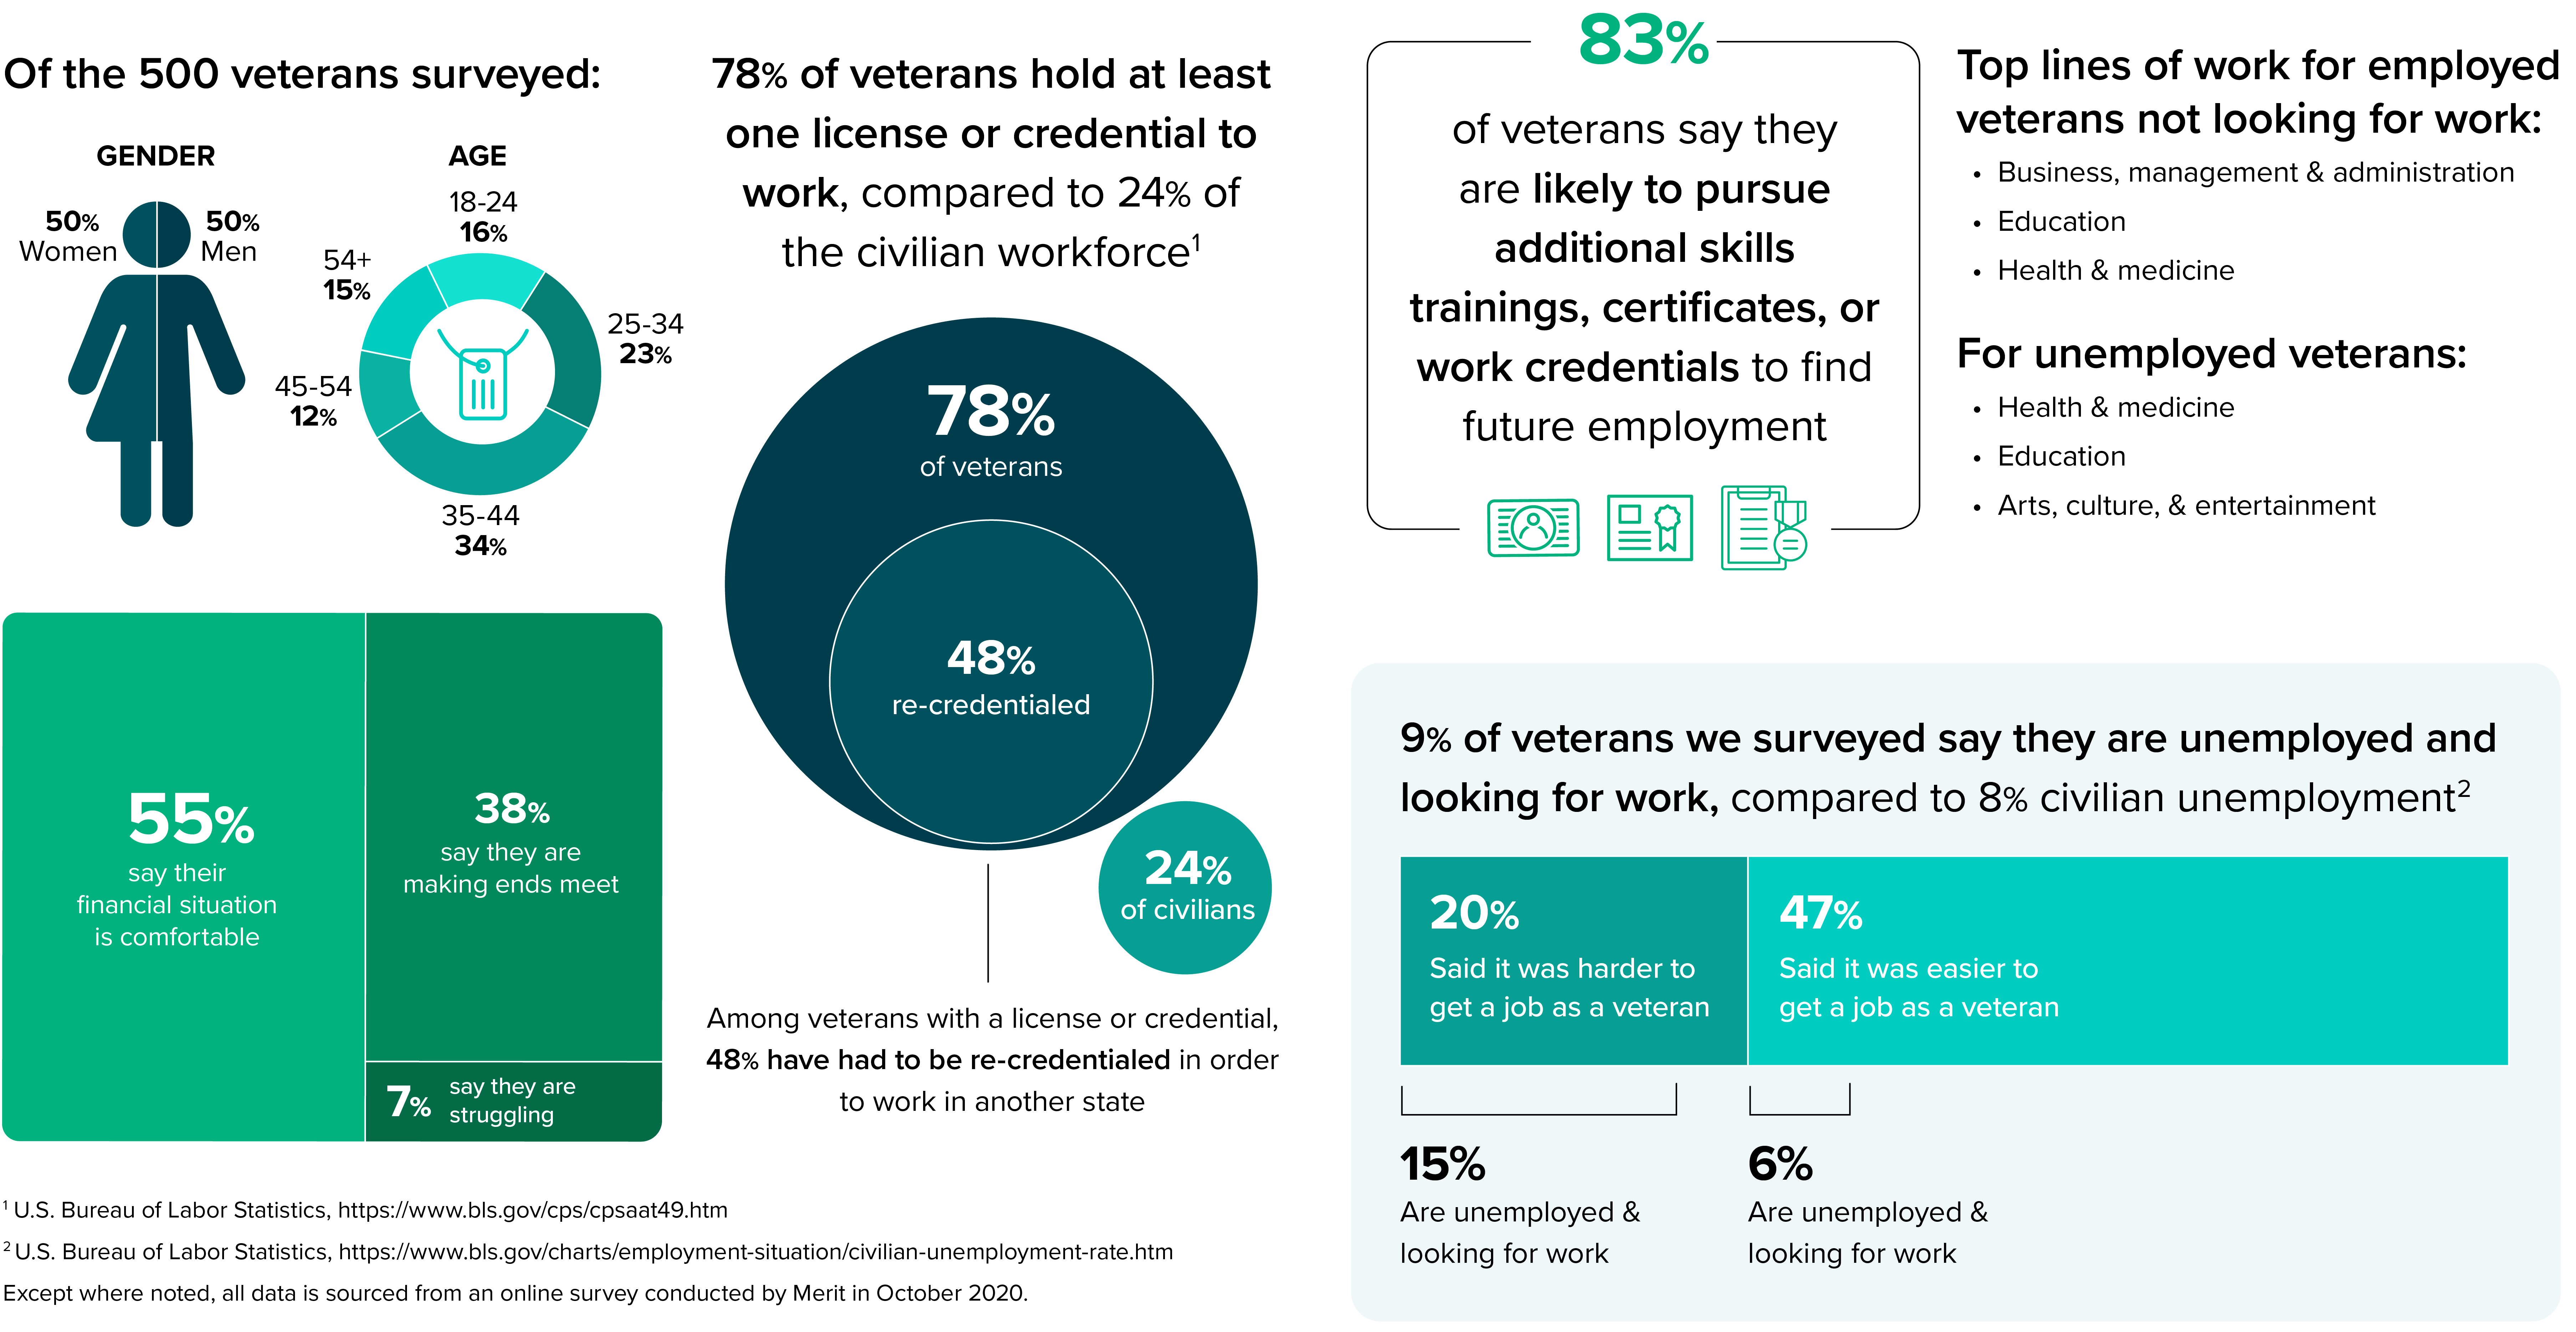 Veteran-Infographic-DT-02-1